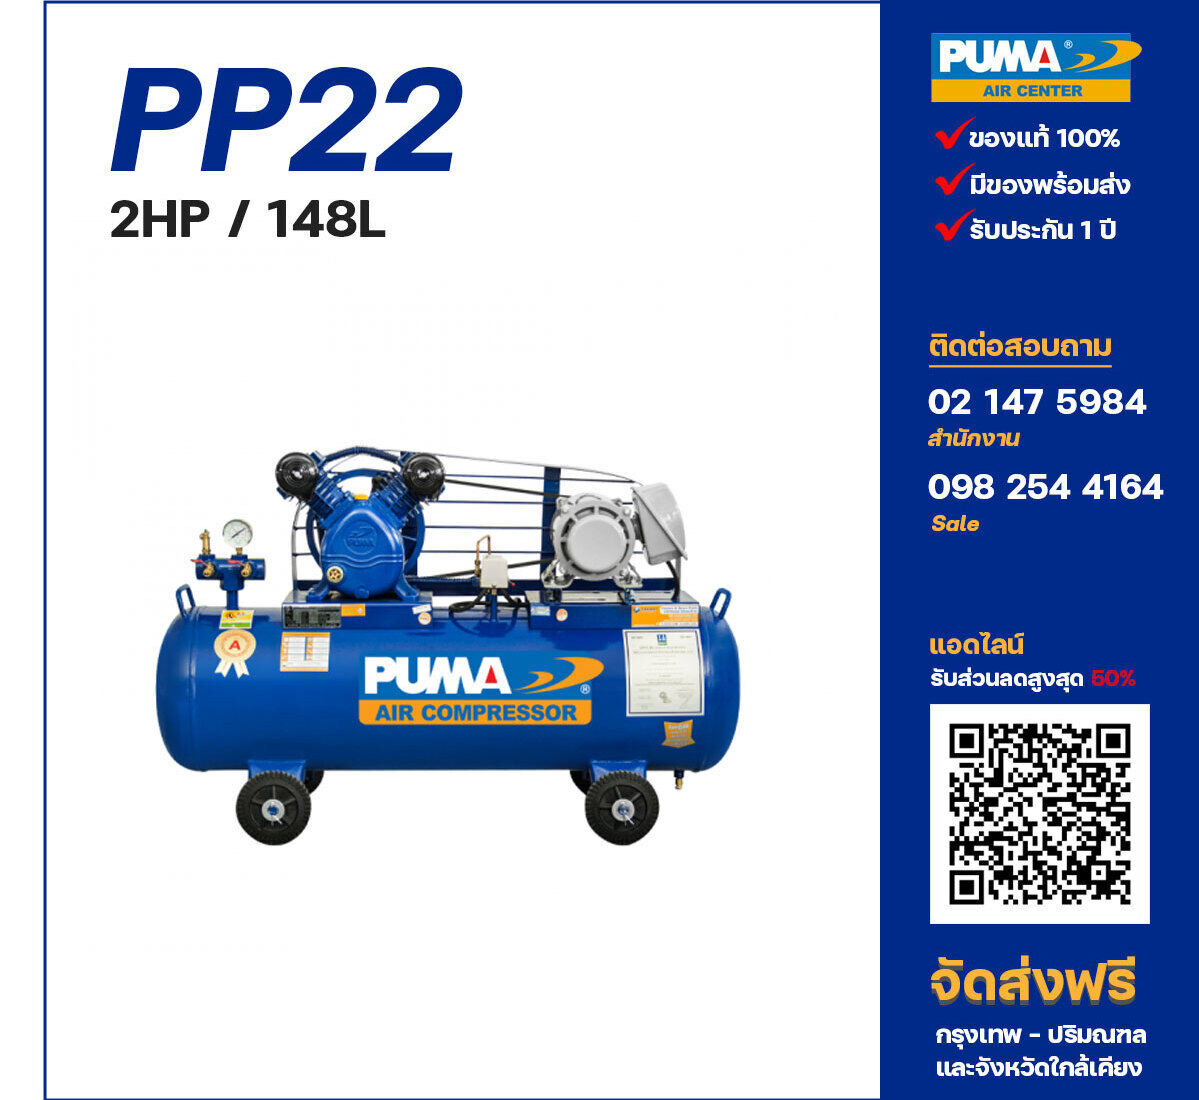 ปั๊มลมพูม่า PUMA รุ่น PP22 ขนาด 2 แรงม้า / 148 ลิตร